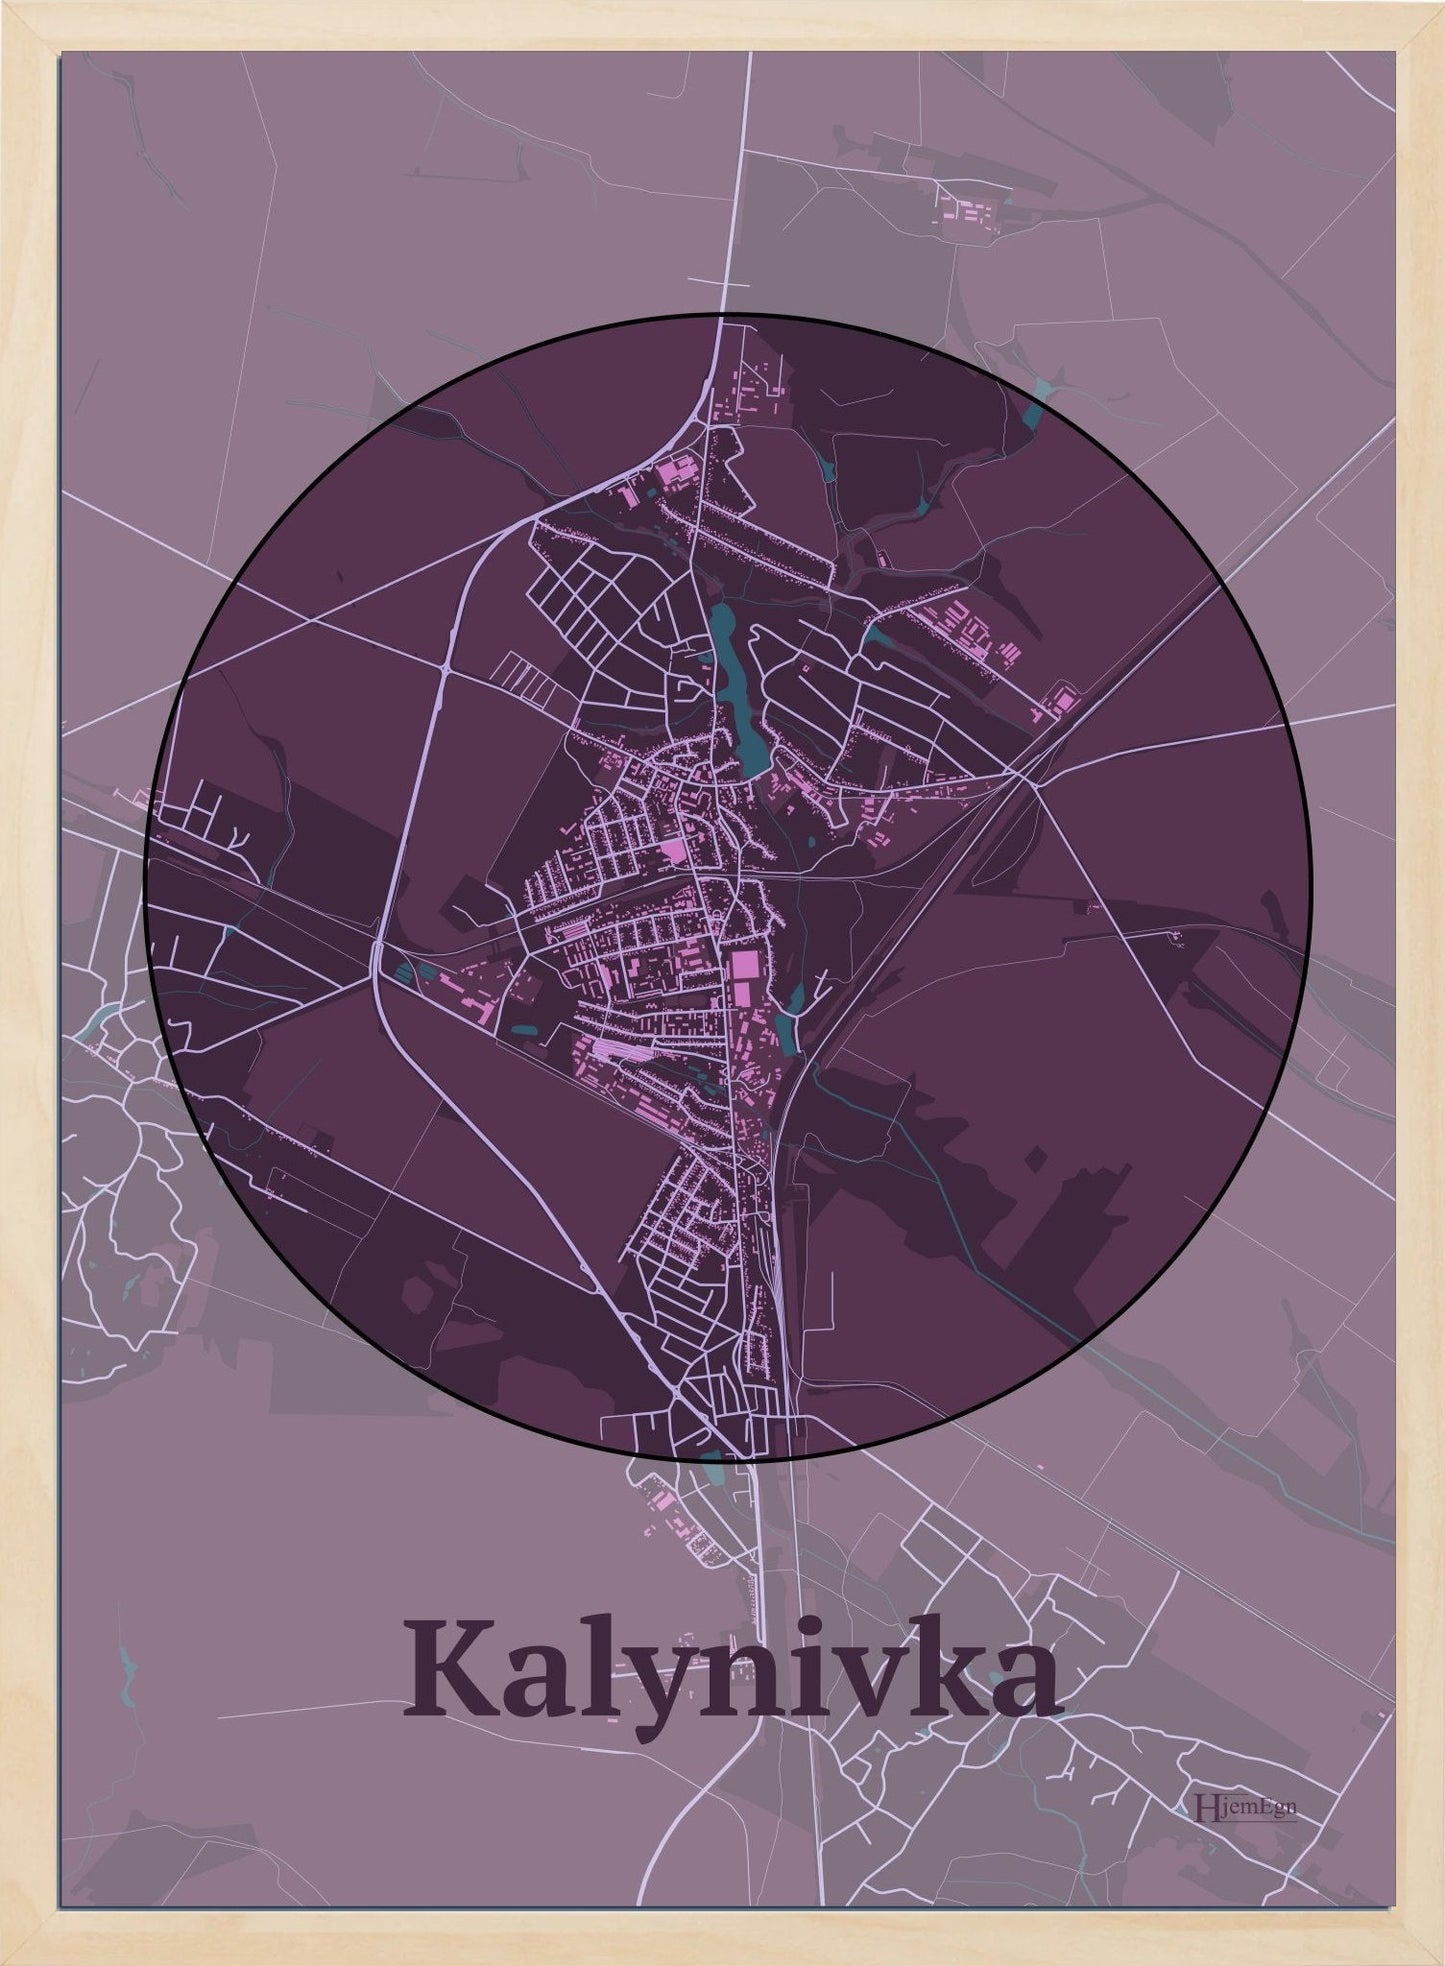 Kalynivka plakat i farve mørk rød og HjemEgn.dk design centrum. Design bykort for Kalynivka